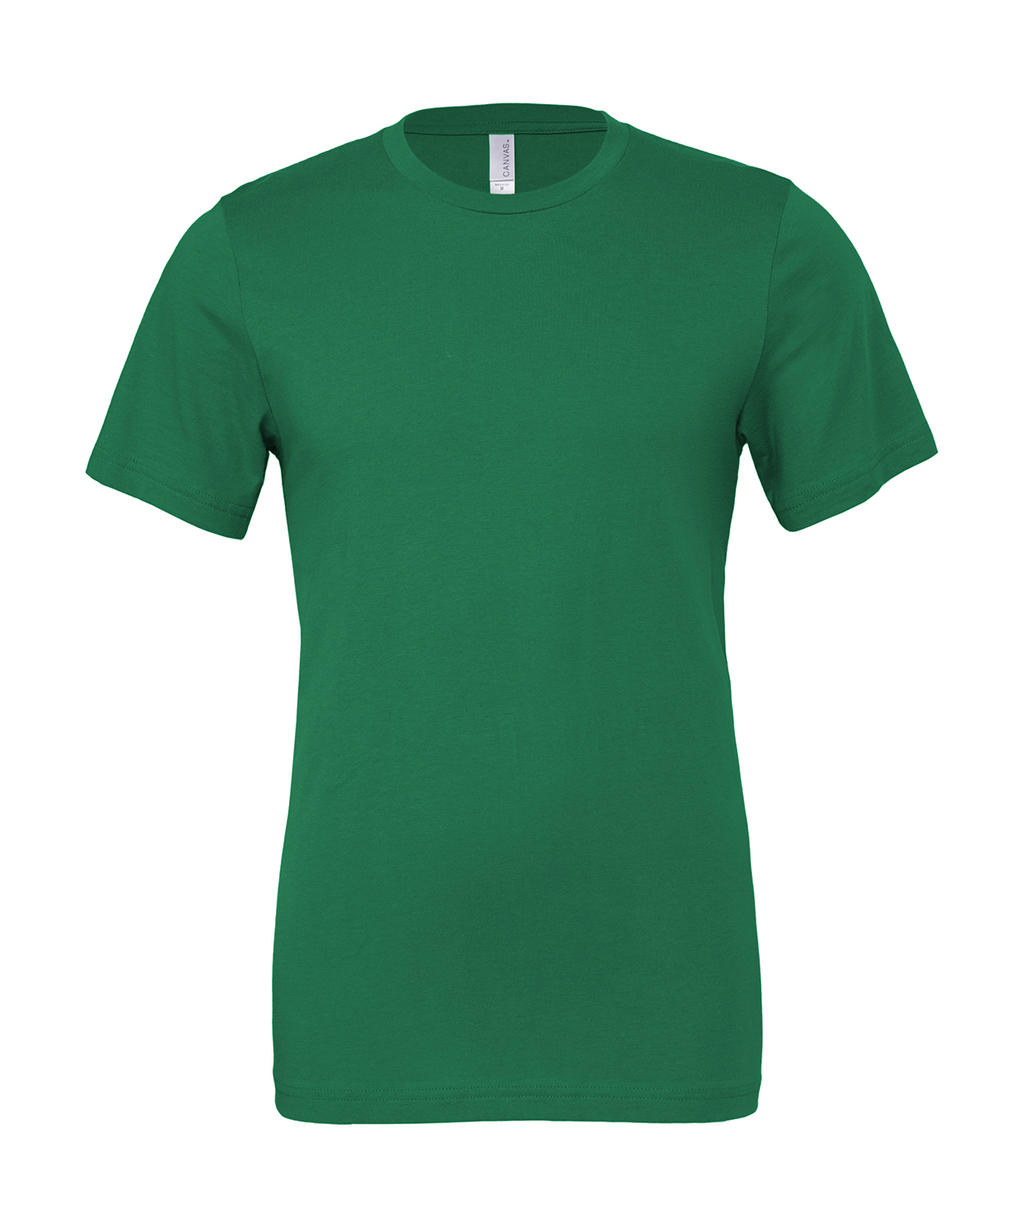 Tričko Unisex Jersey - kelly green